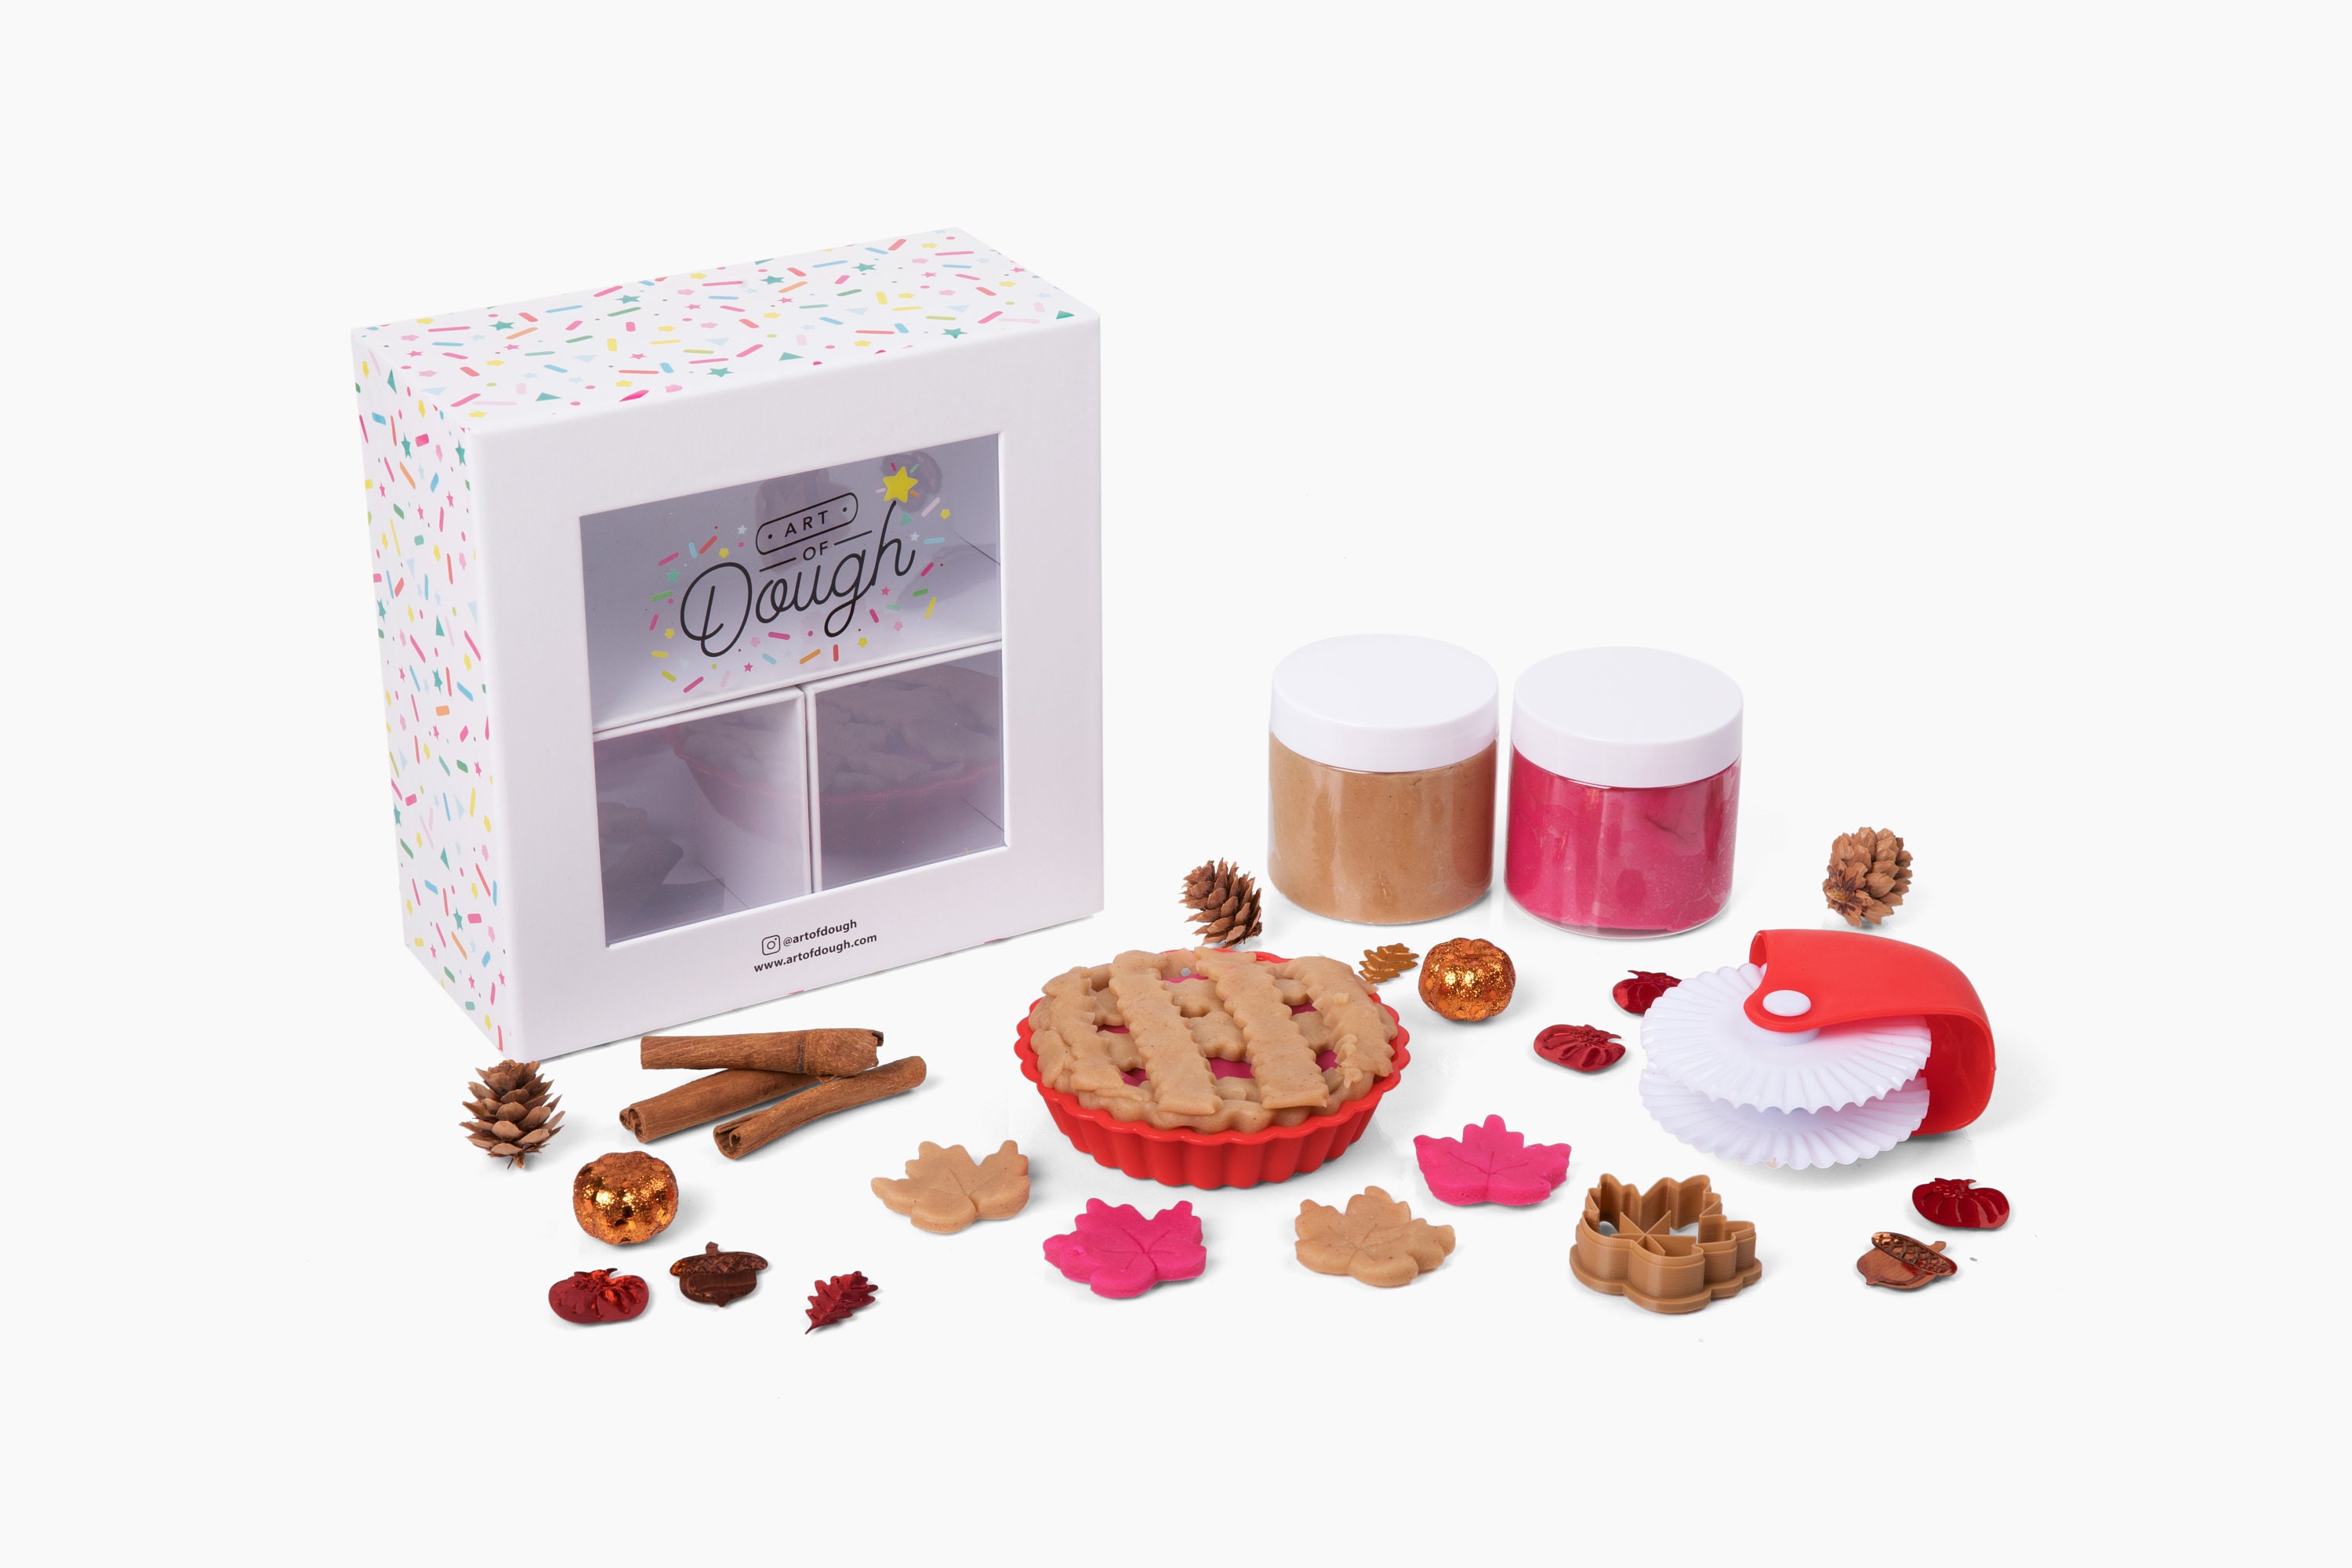 Playdough Kit, Ocean Play Dough Kit for Girls and Boys, Sensory